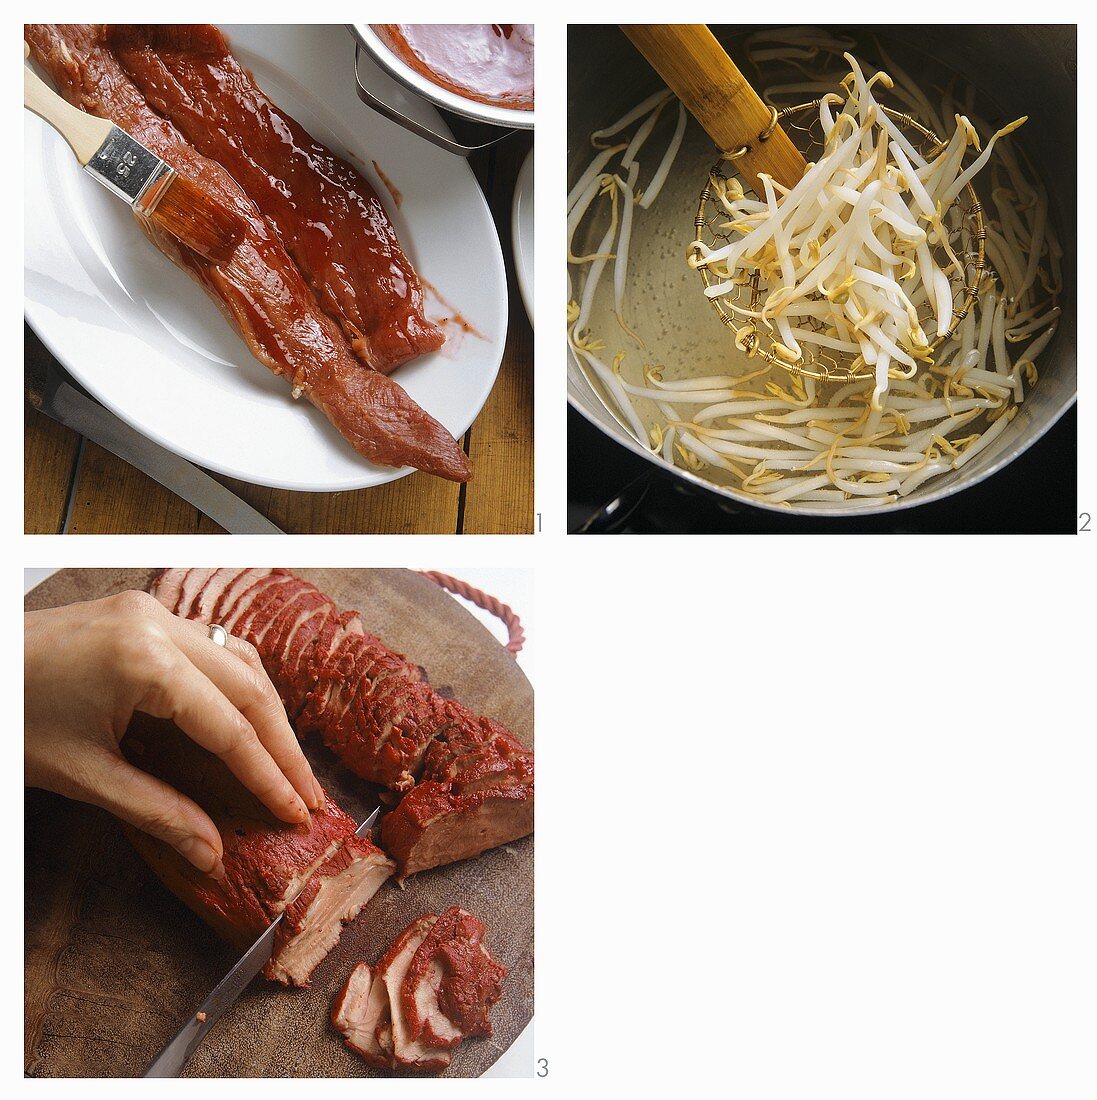 Nudelsuppe mit rotem Fleisch zubereiten